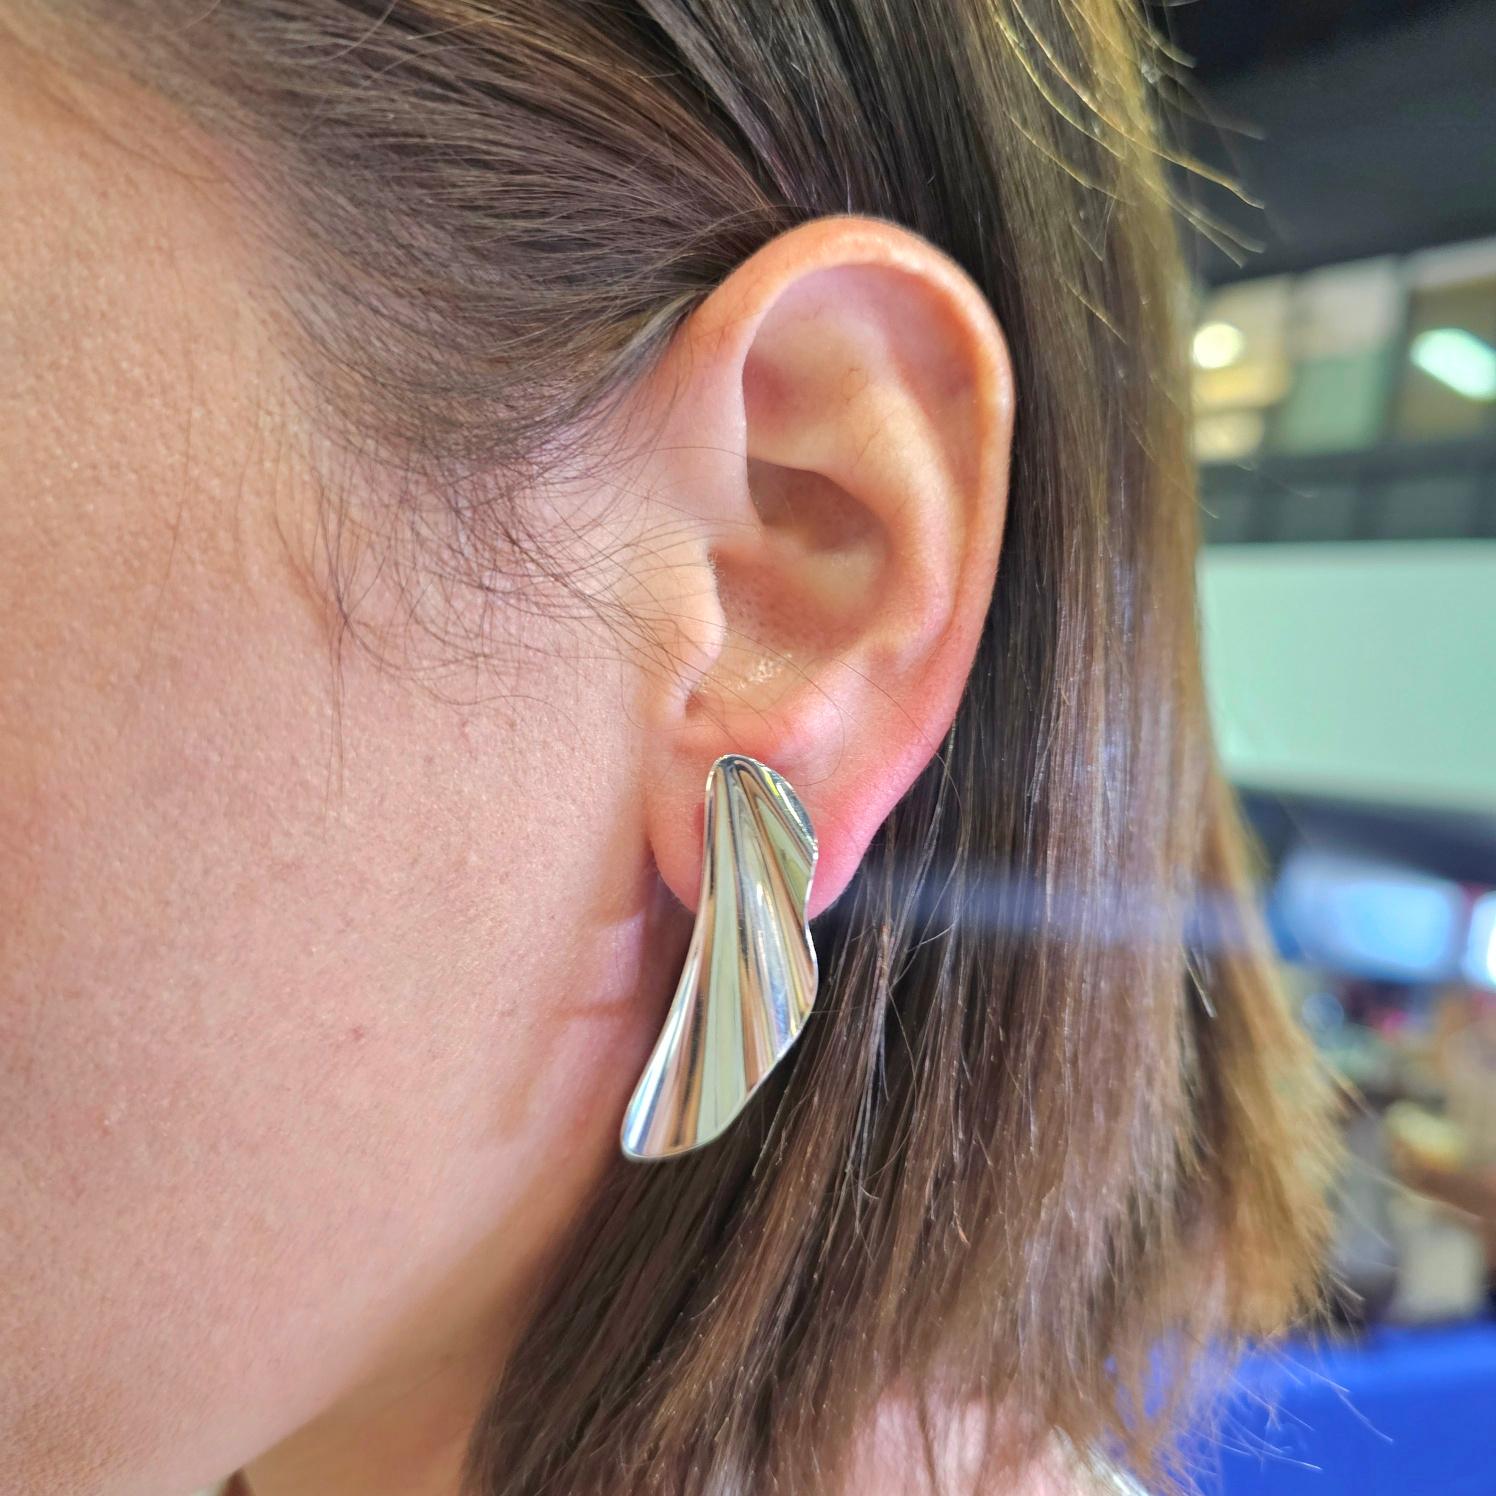 Boucles d'oreilles en forme de vague conçues par Elsa Peretti (1940-2021) pour Tiffany & Co.

Magnifique paire sculpturale de boucles d'oreilles à clips ondulés, créée par Elsa Peretti aux Tiffany Studios, en 1982. Ces boucles d'oreilles vintage